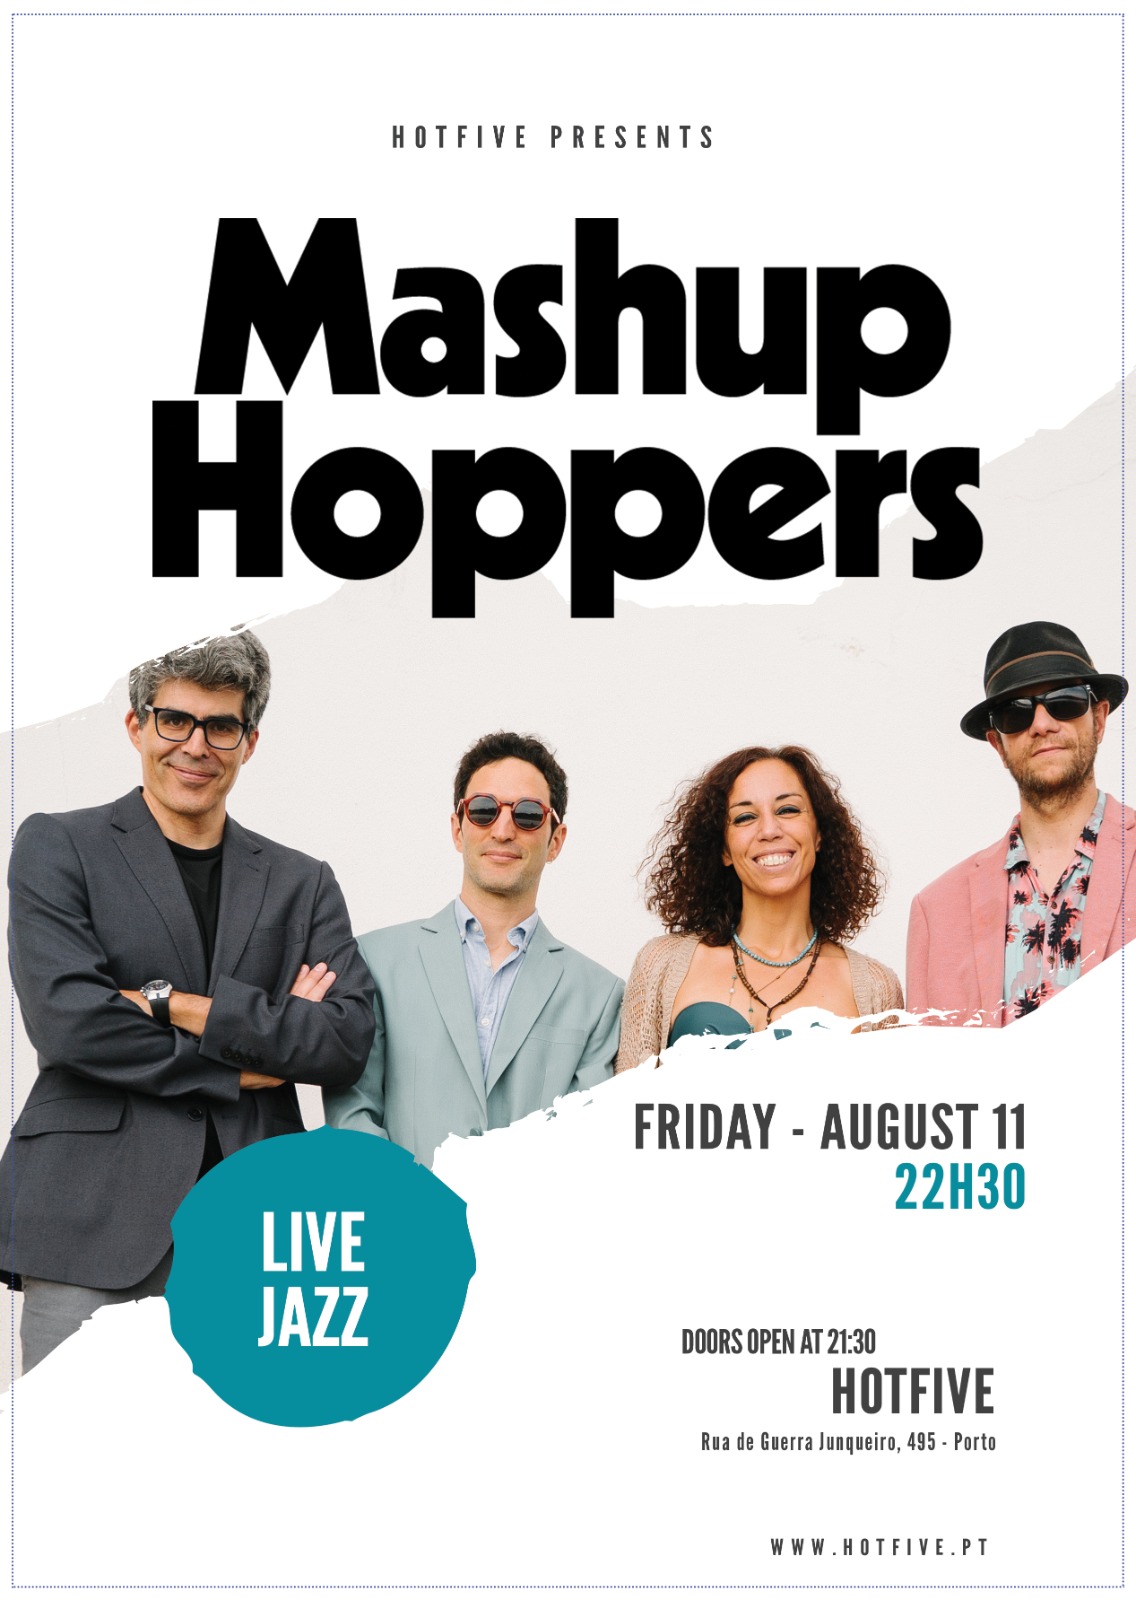 Mashup Hoppers jazz live music